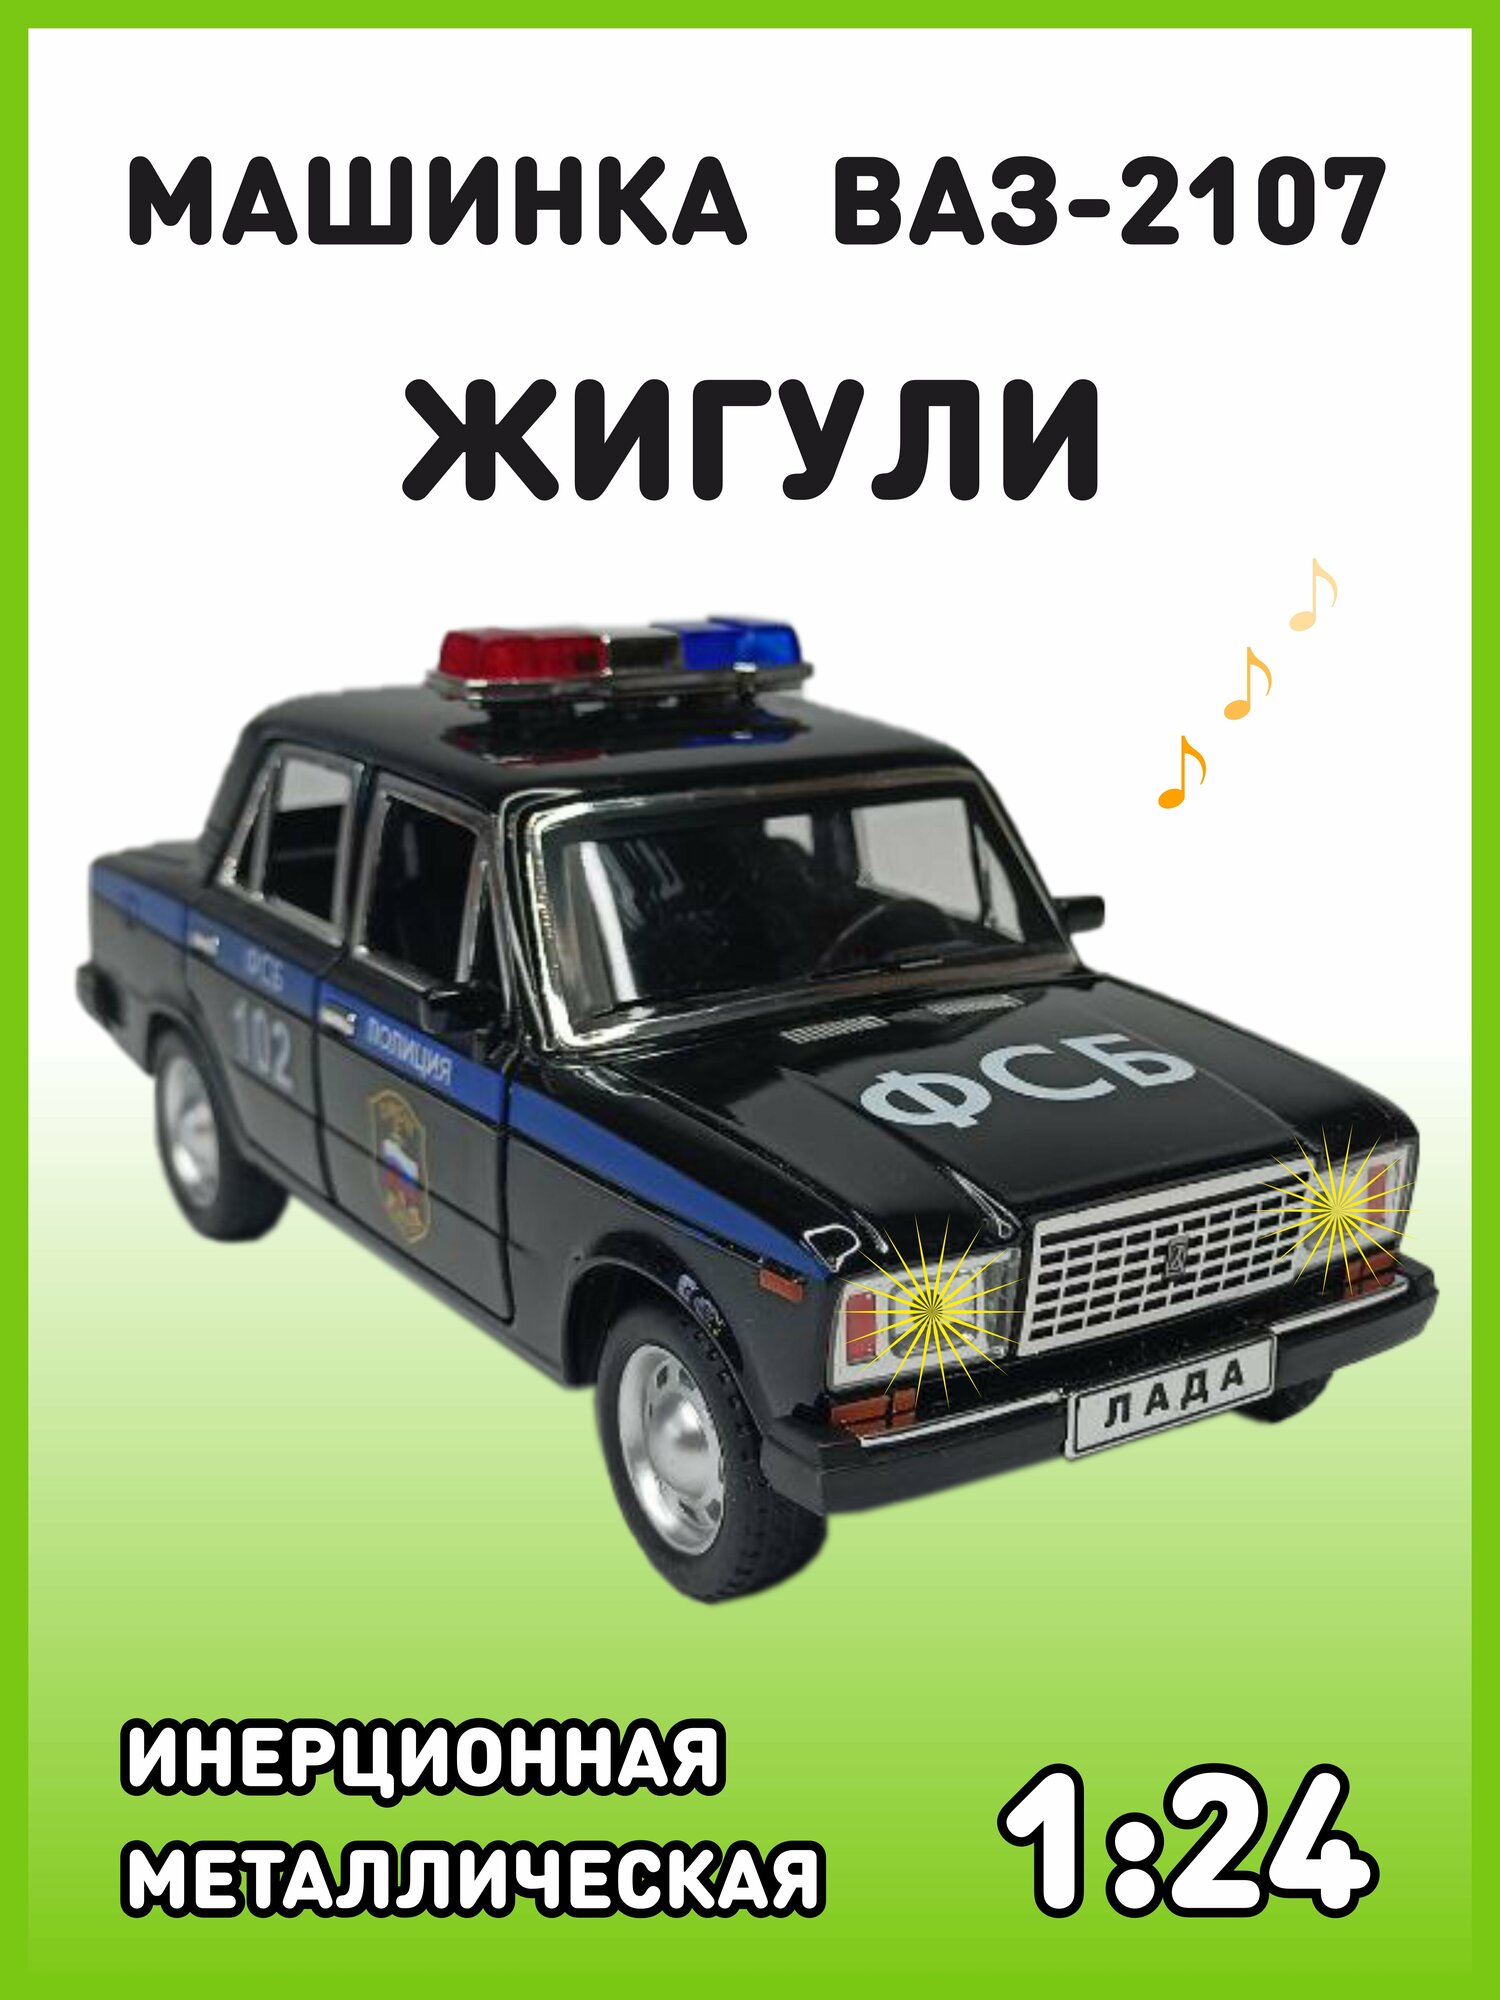 Модель автомобиля Жигули ВАЗ 2107 коллекционная металлическая игрушка масштаб 1:24 черный2